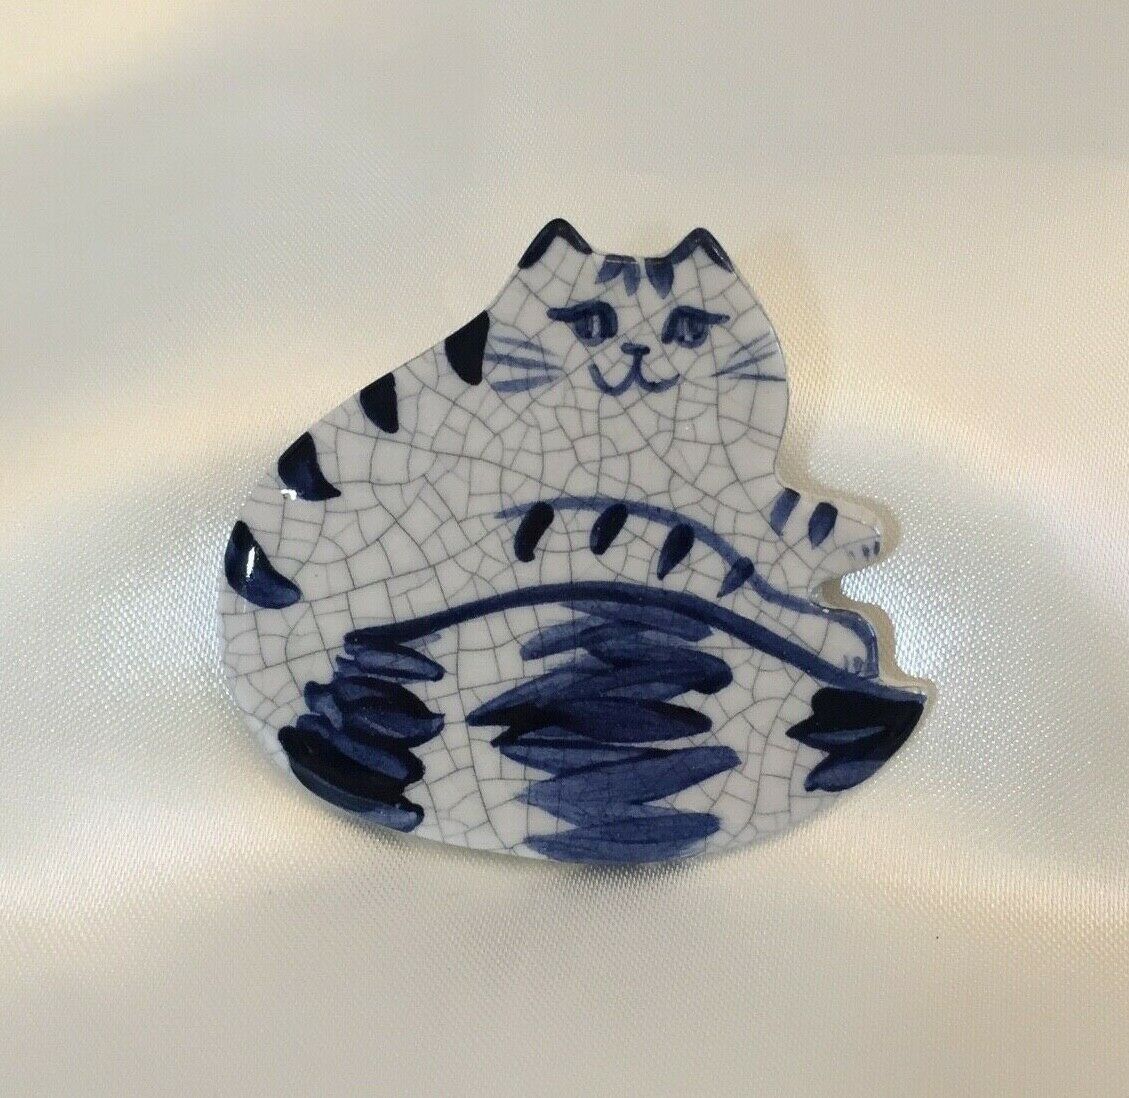 Vtg Handmade Kitty CAT Pin Signed Dated 1995 Crackled Ceramic Blue & White 2.25